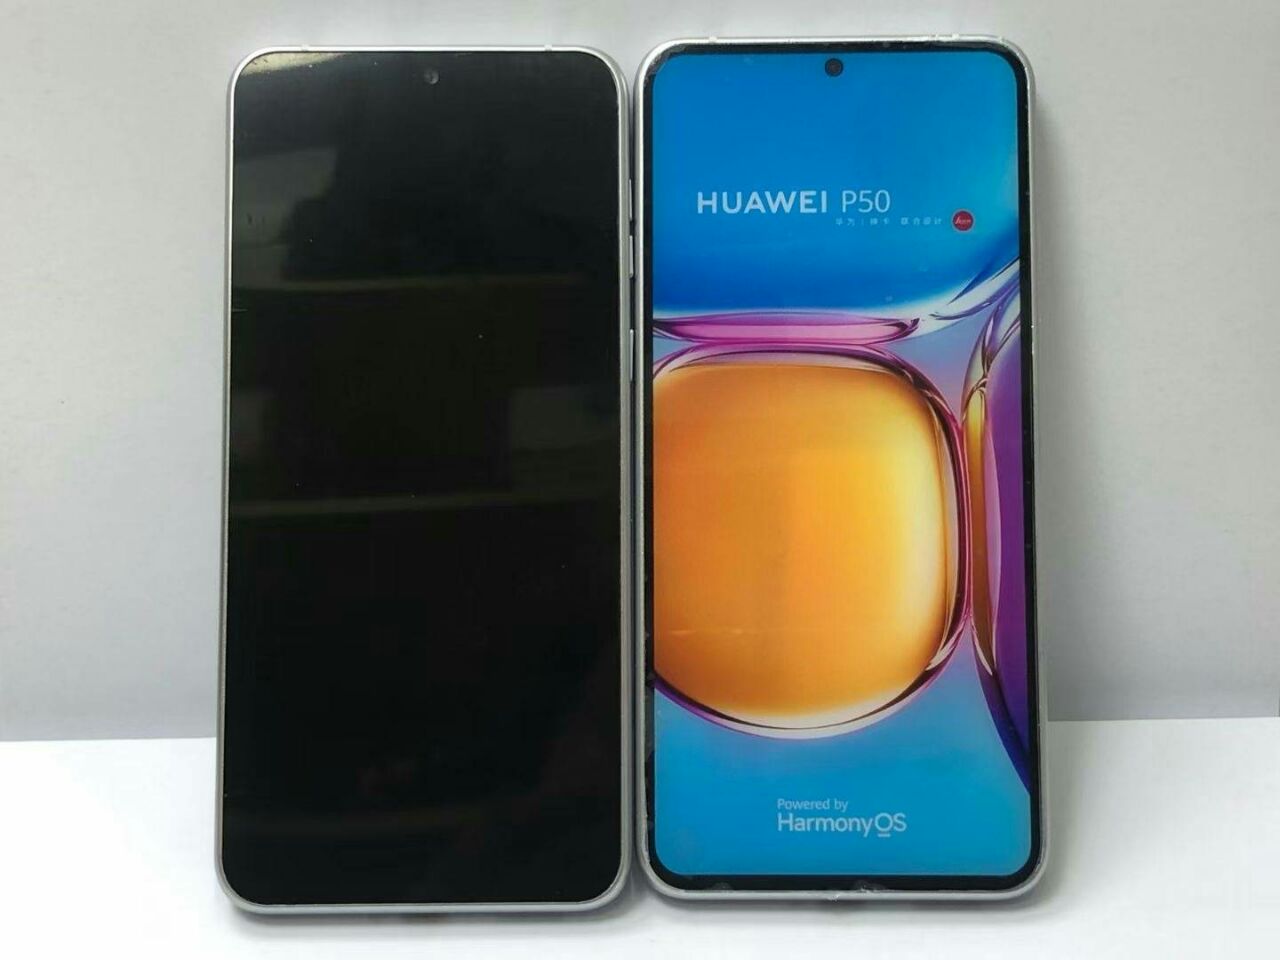 Стала известна вероятная дата презентации нового флагманского смартфона Huawei P50. Сообщается, что анонс новинки может состояться уже через полтора месяца, а именно 17 июня. Ранее в сети появлялась довольно противоречивая информация, касающаяся нового смартфона Huawei, вплоть до того, что устройство может вообще никогда не выйти.